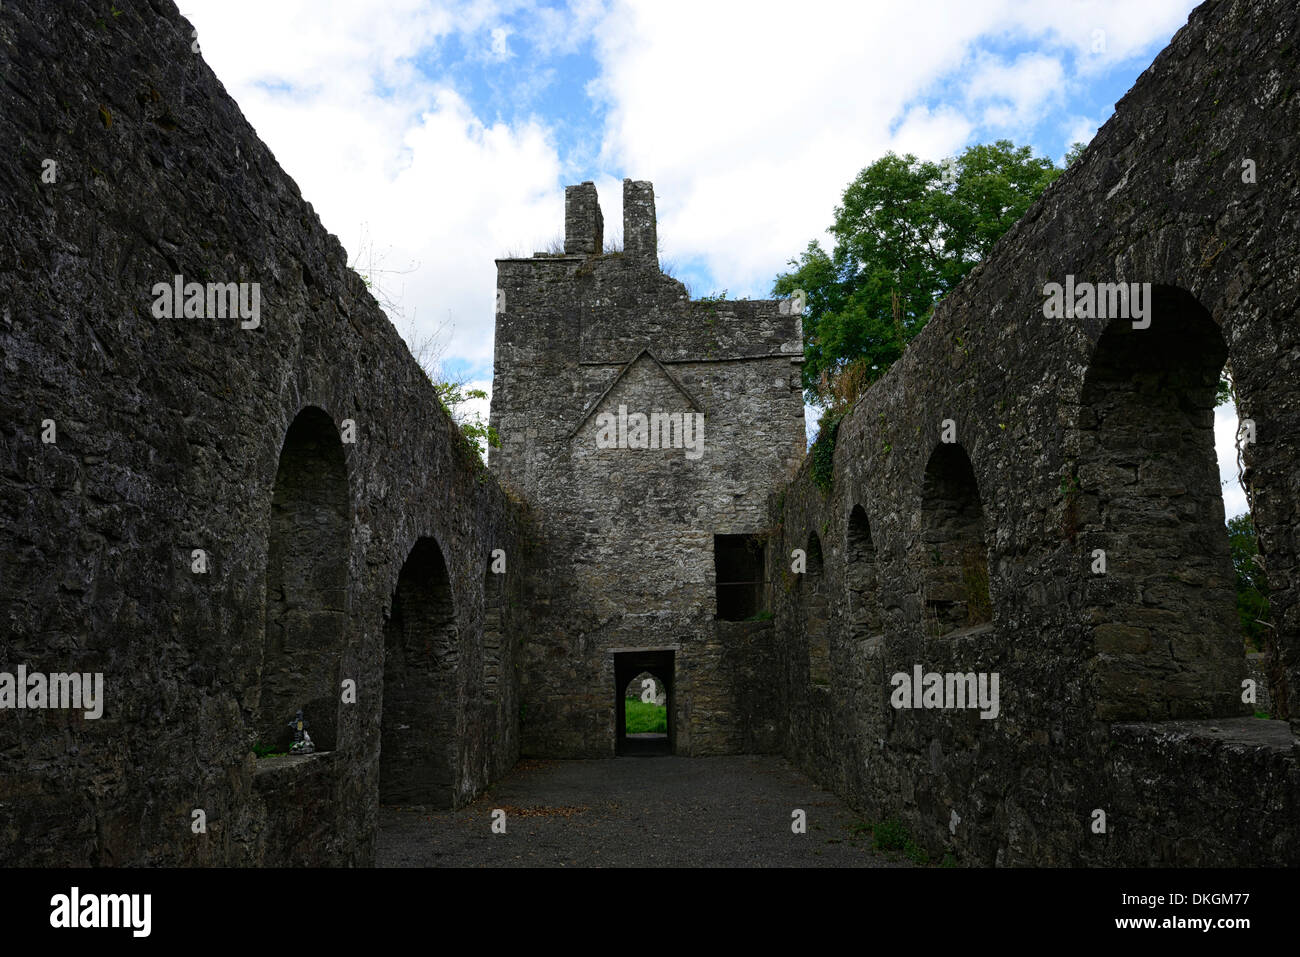 St saint oliver plunketts église famille oldcastle loughcrew meath Irlande Lieu de naissance Banque D'Images